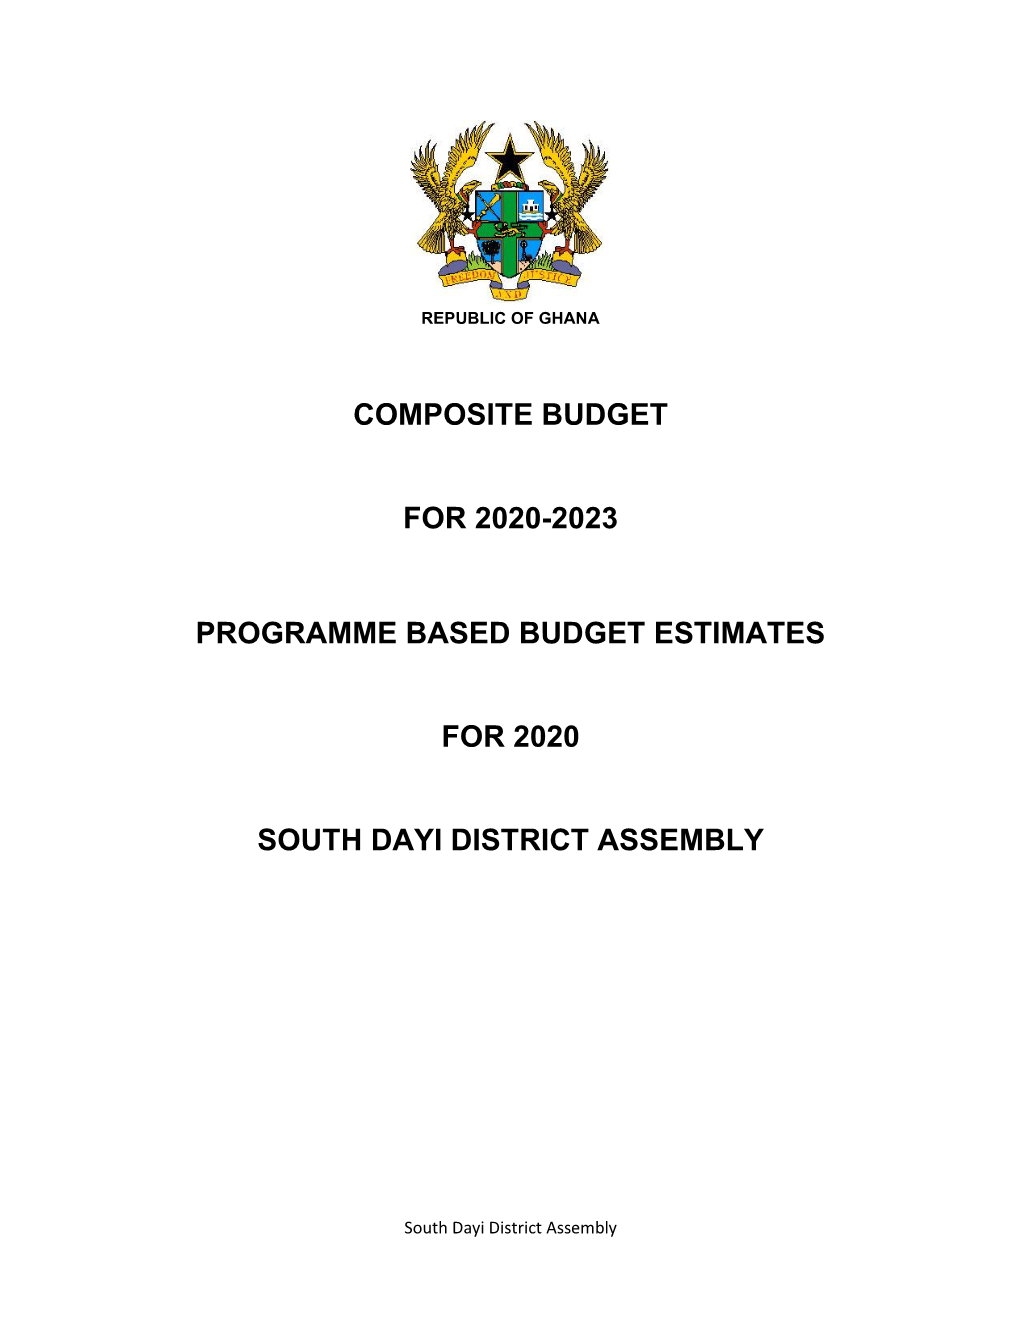 Composite Budget for 2020